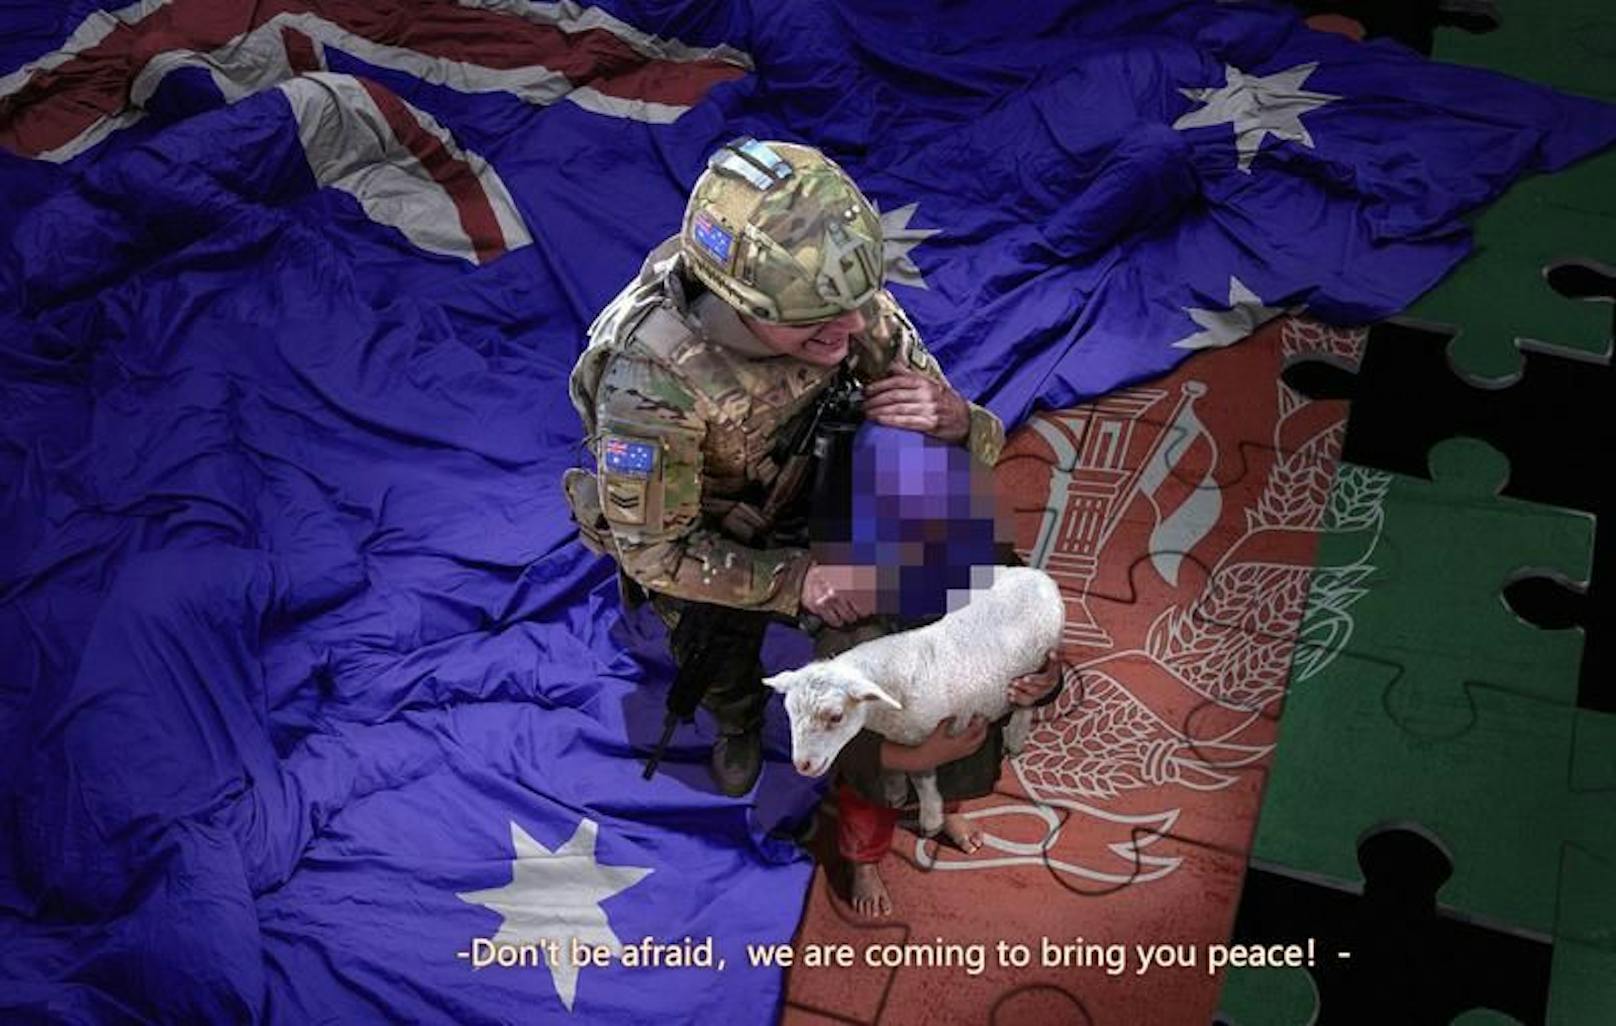 Dieses bearbeitete Bild (von der Redaktion zensiert) zeigt einen australischen Soldaten, der ein blutiges Messer an die Kehle eines Kindes hält. 